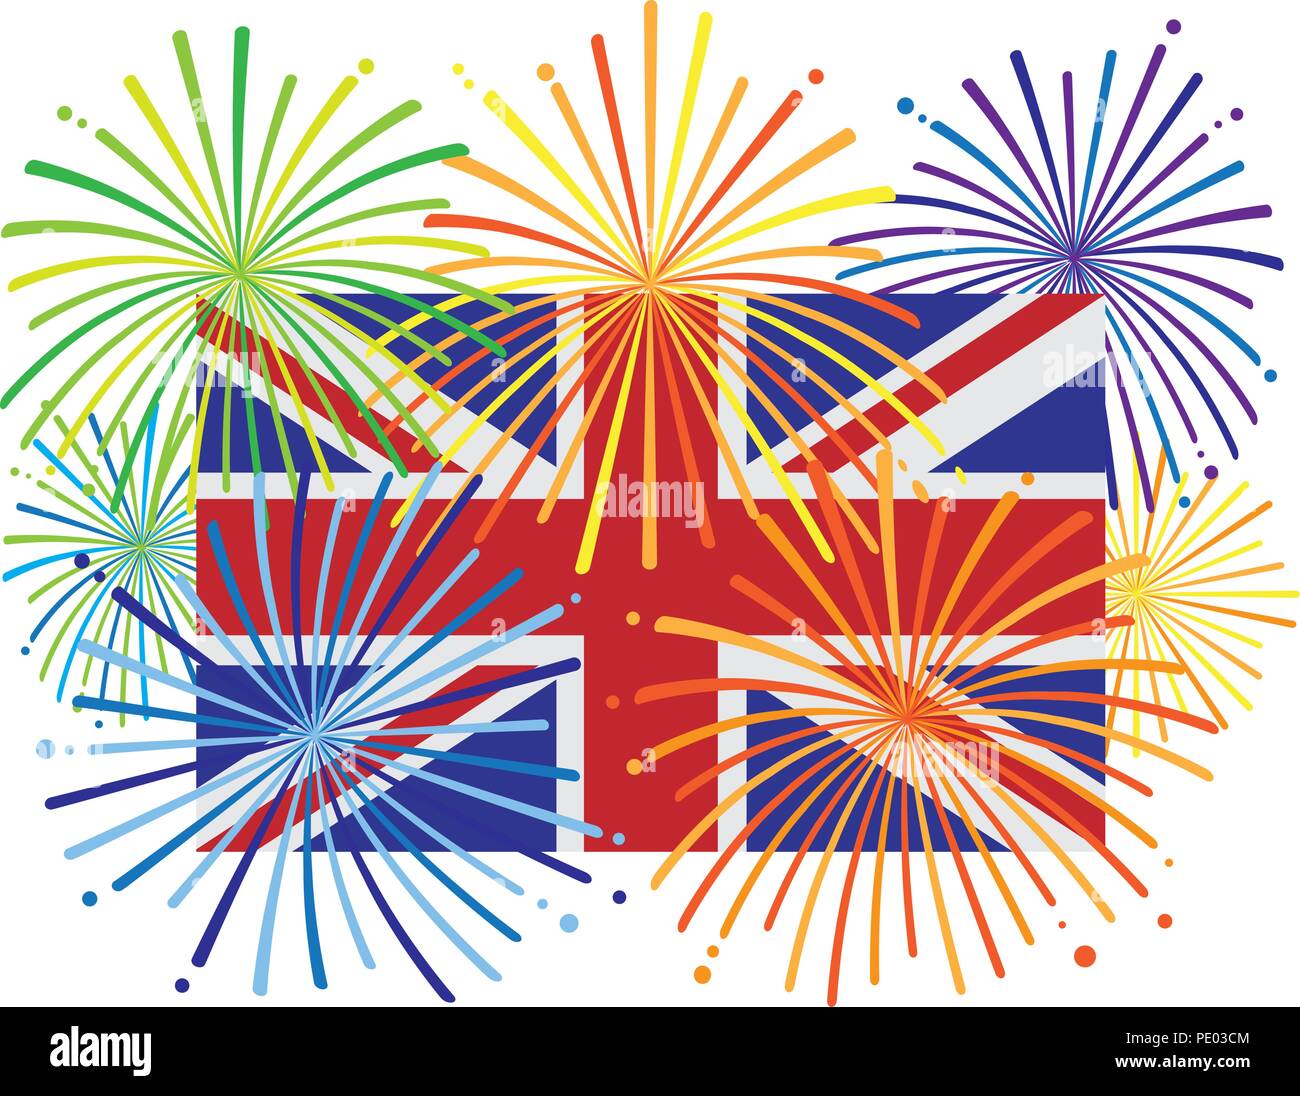 Gran Bretagna Inghilterra Jack Flag di unione con i fuochi d'artificio Illustrazione a colori Illustrazione Vettoriale